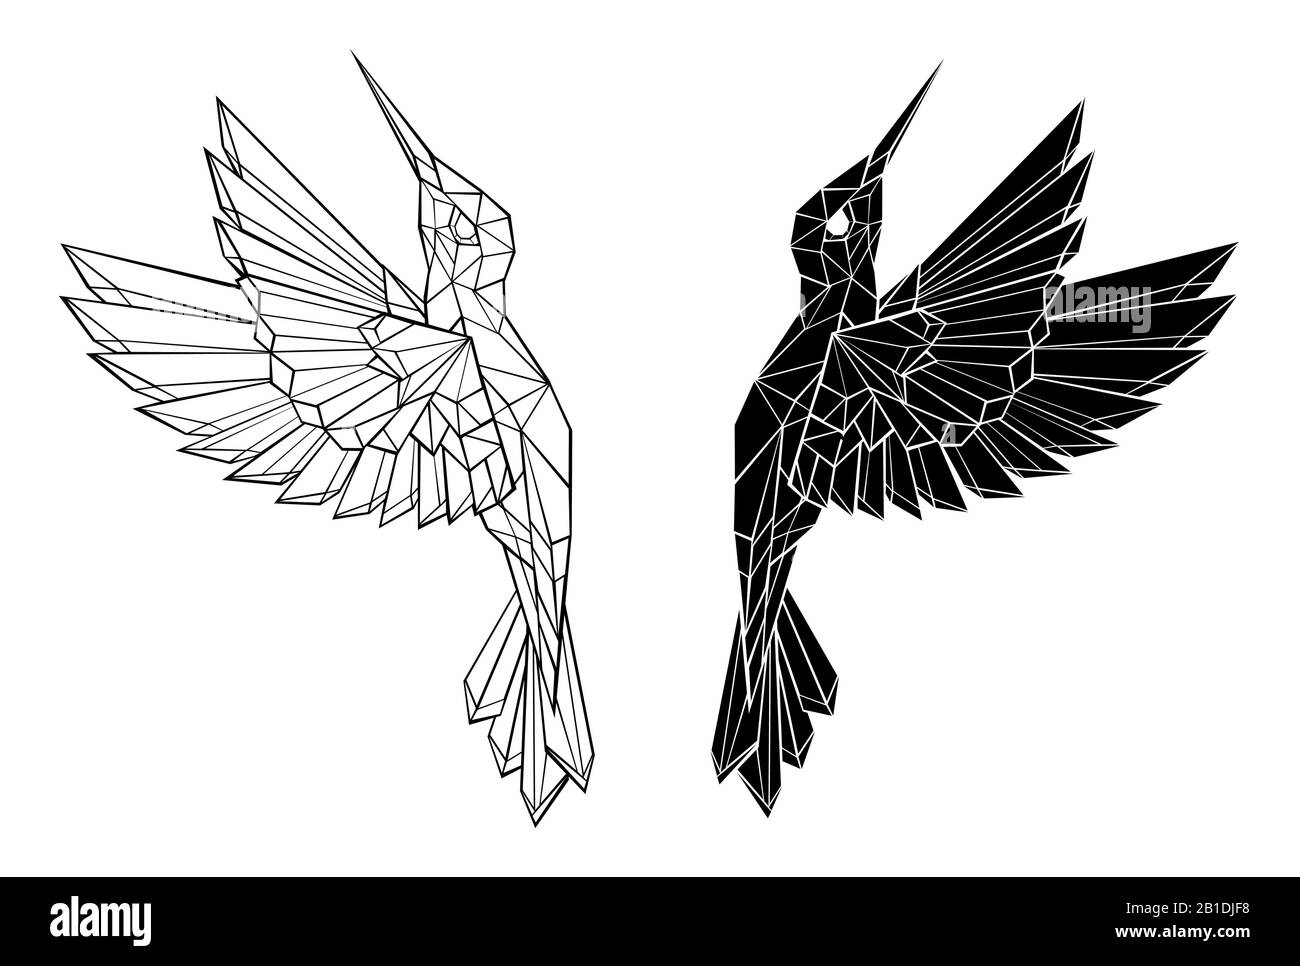 Dessin artistiquement, contour noir, polygonal, colibri volant sur fond blanc. Style tatouage. Illustration de Vecteur